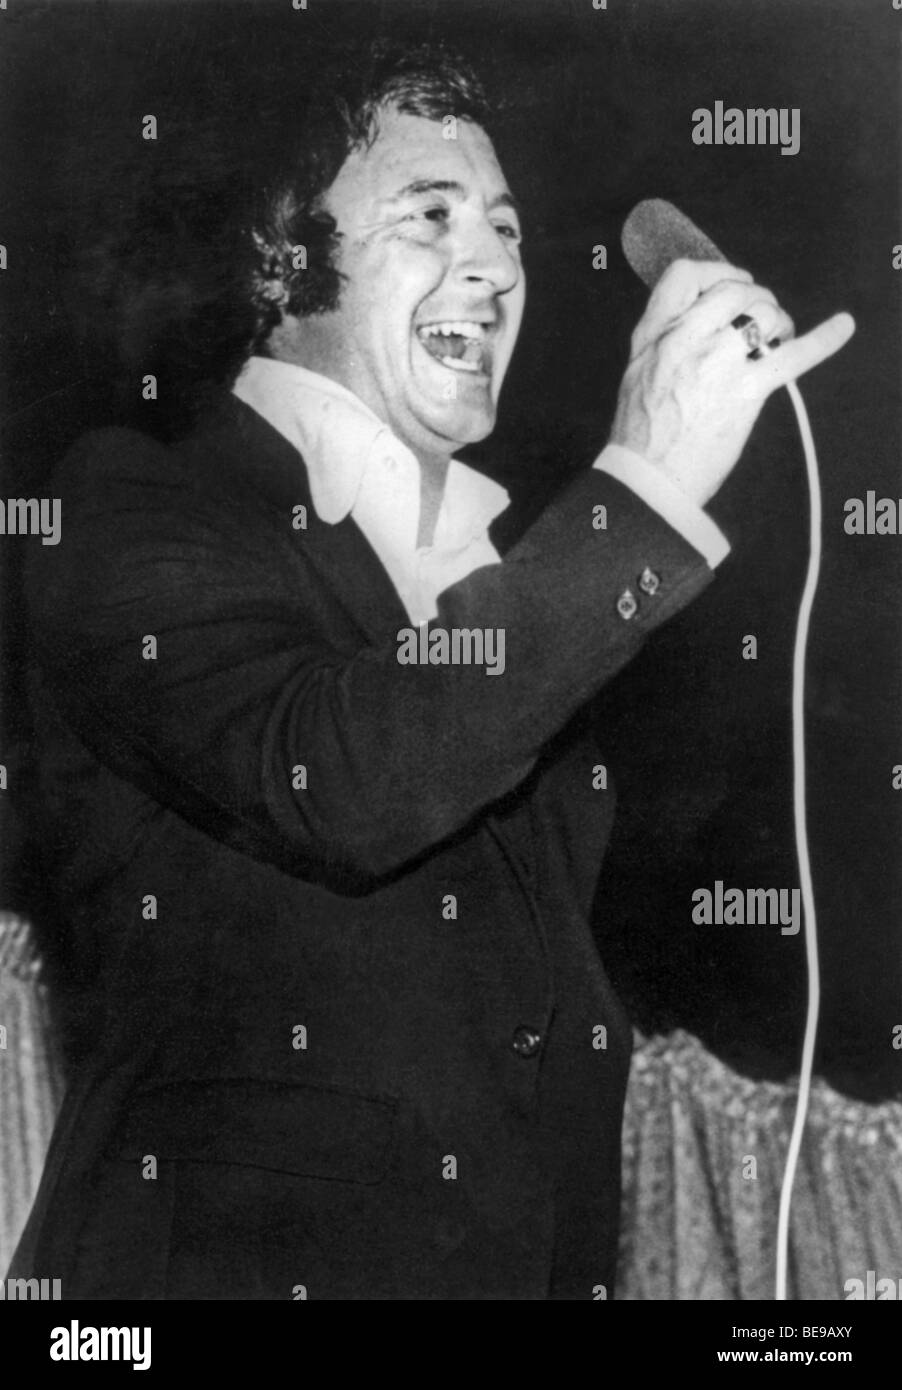 TONY CHRISTIE  - UK singer in 1971 Stock Photo